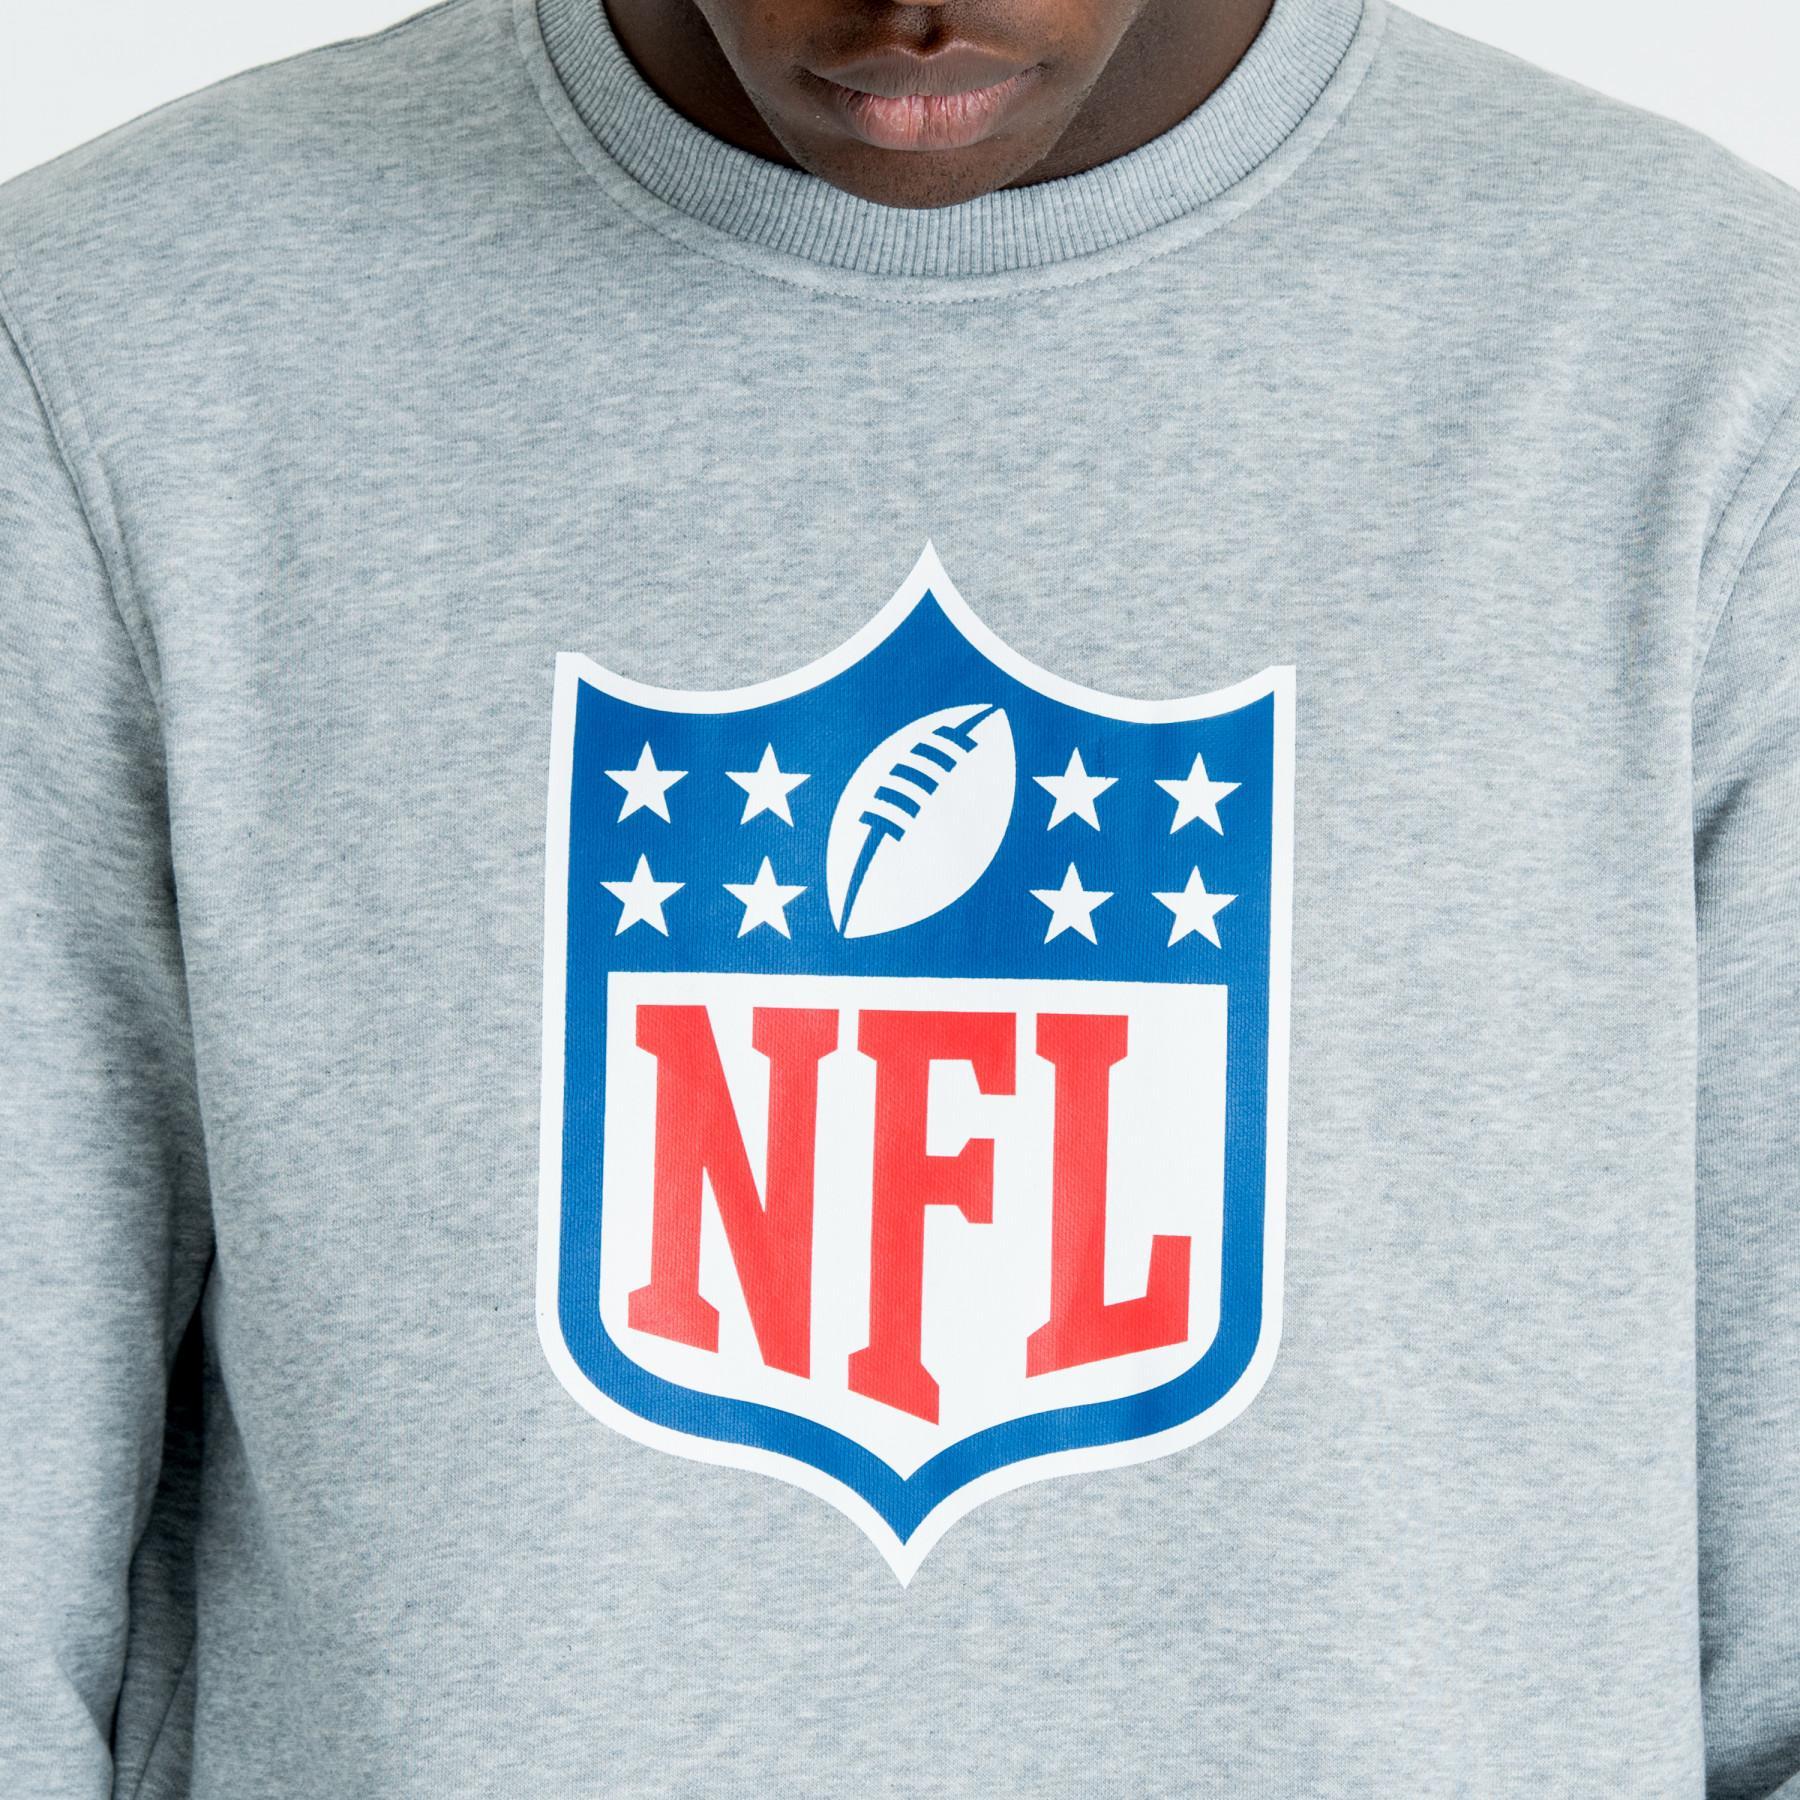 Camisola com o logotipo da equipa da NFL